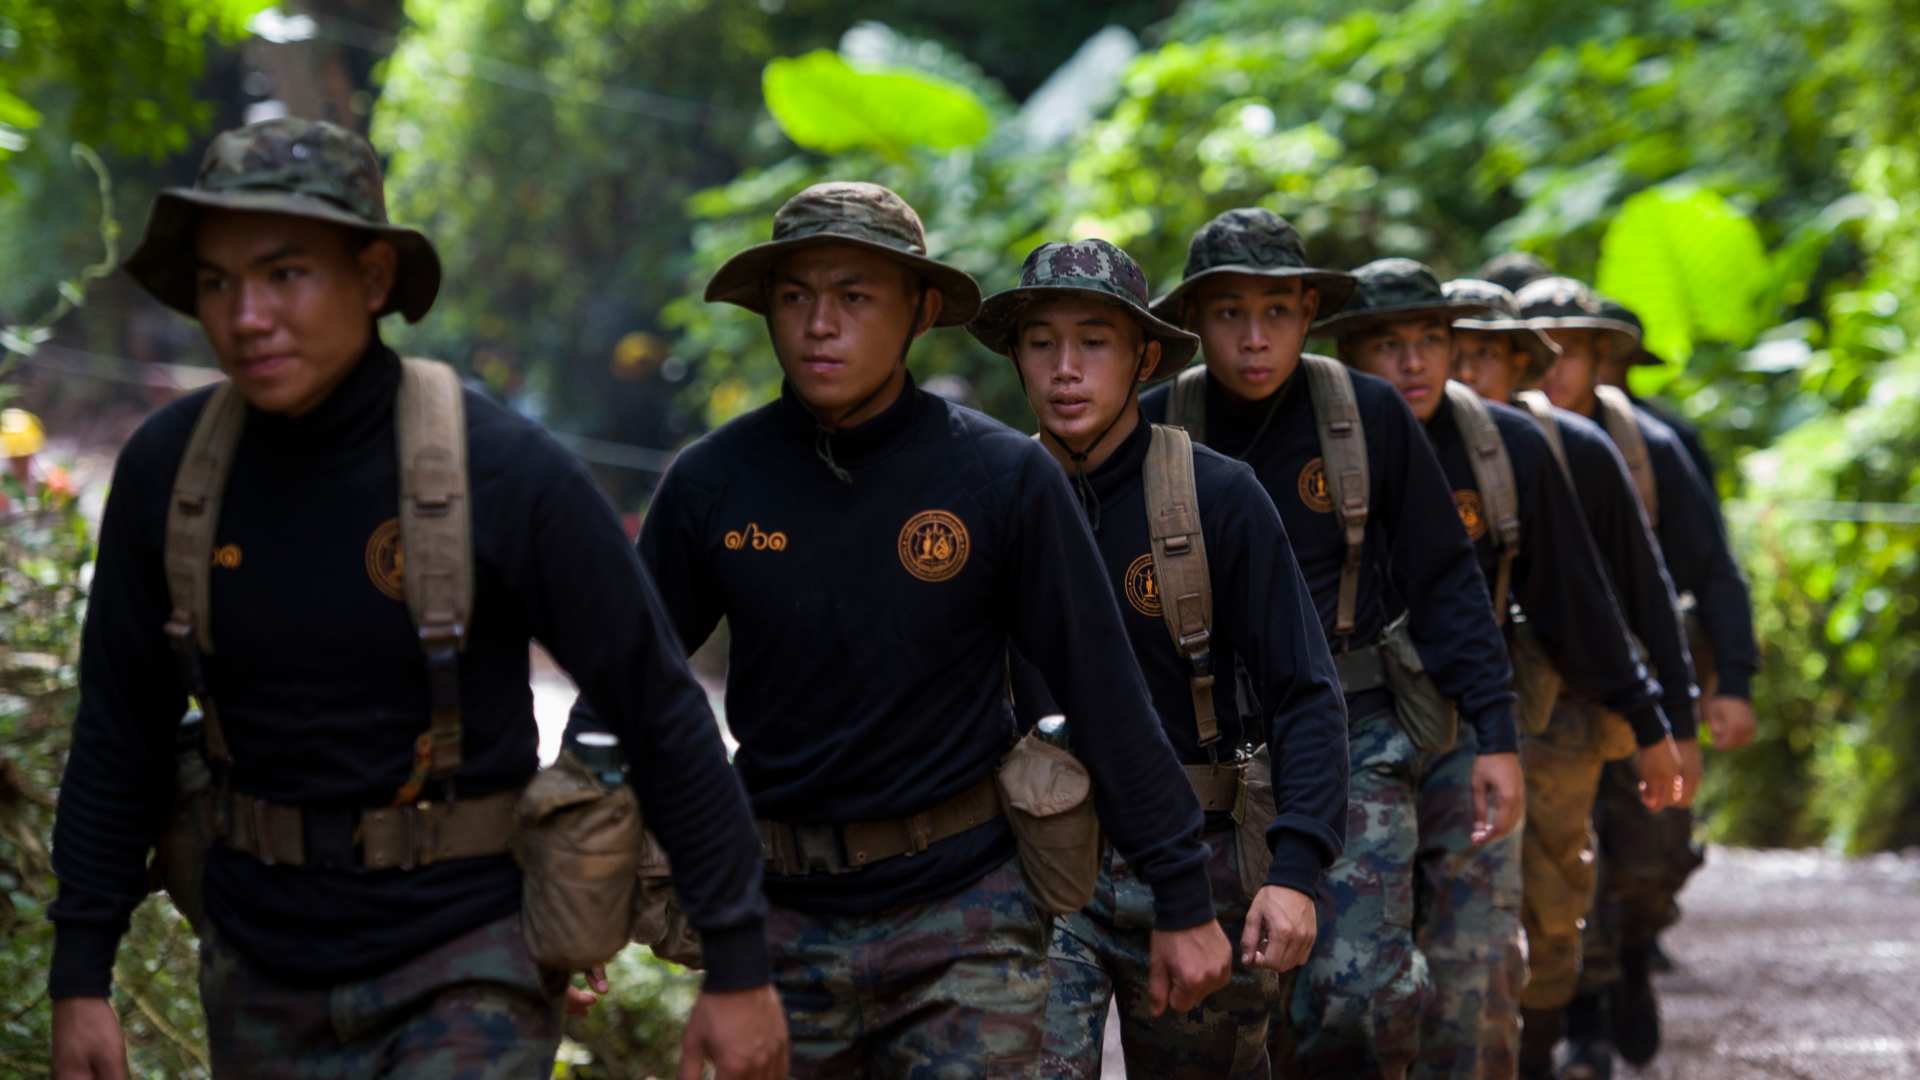 Varios soldados acompañan a los niños atrapados en una cueva tailandesa